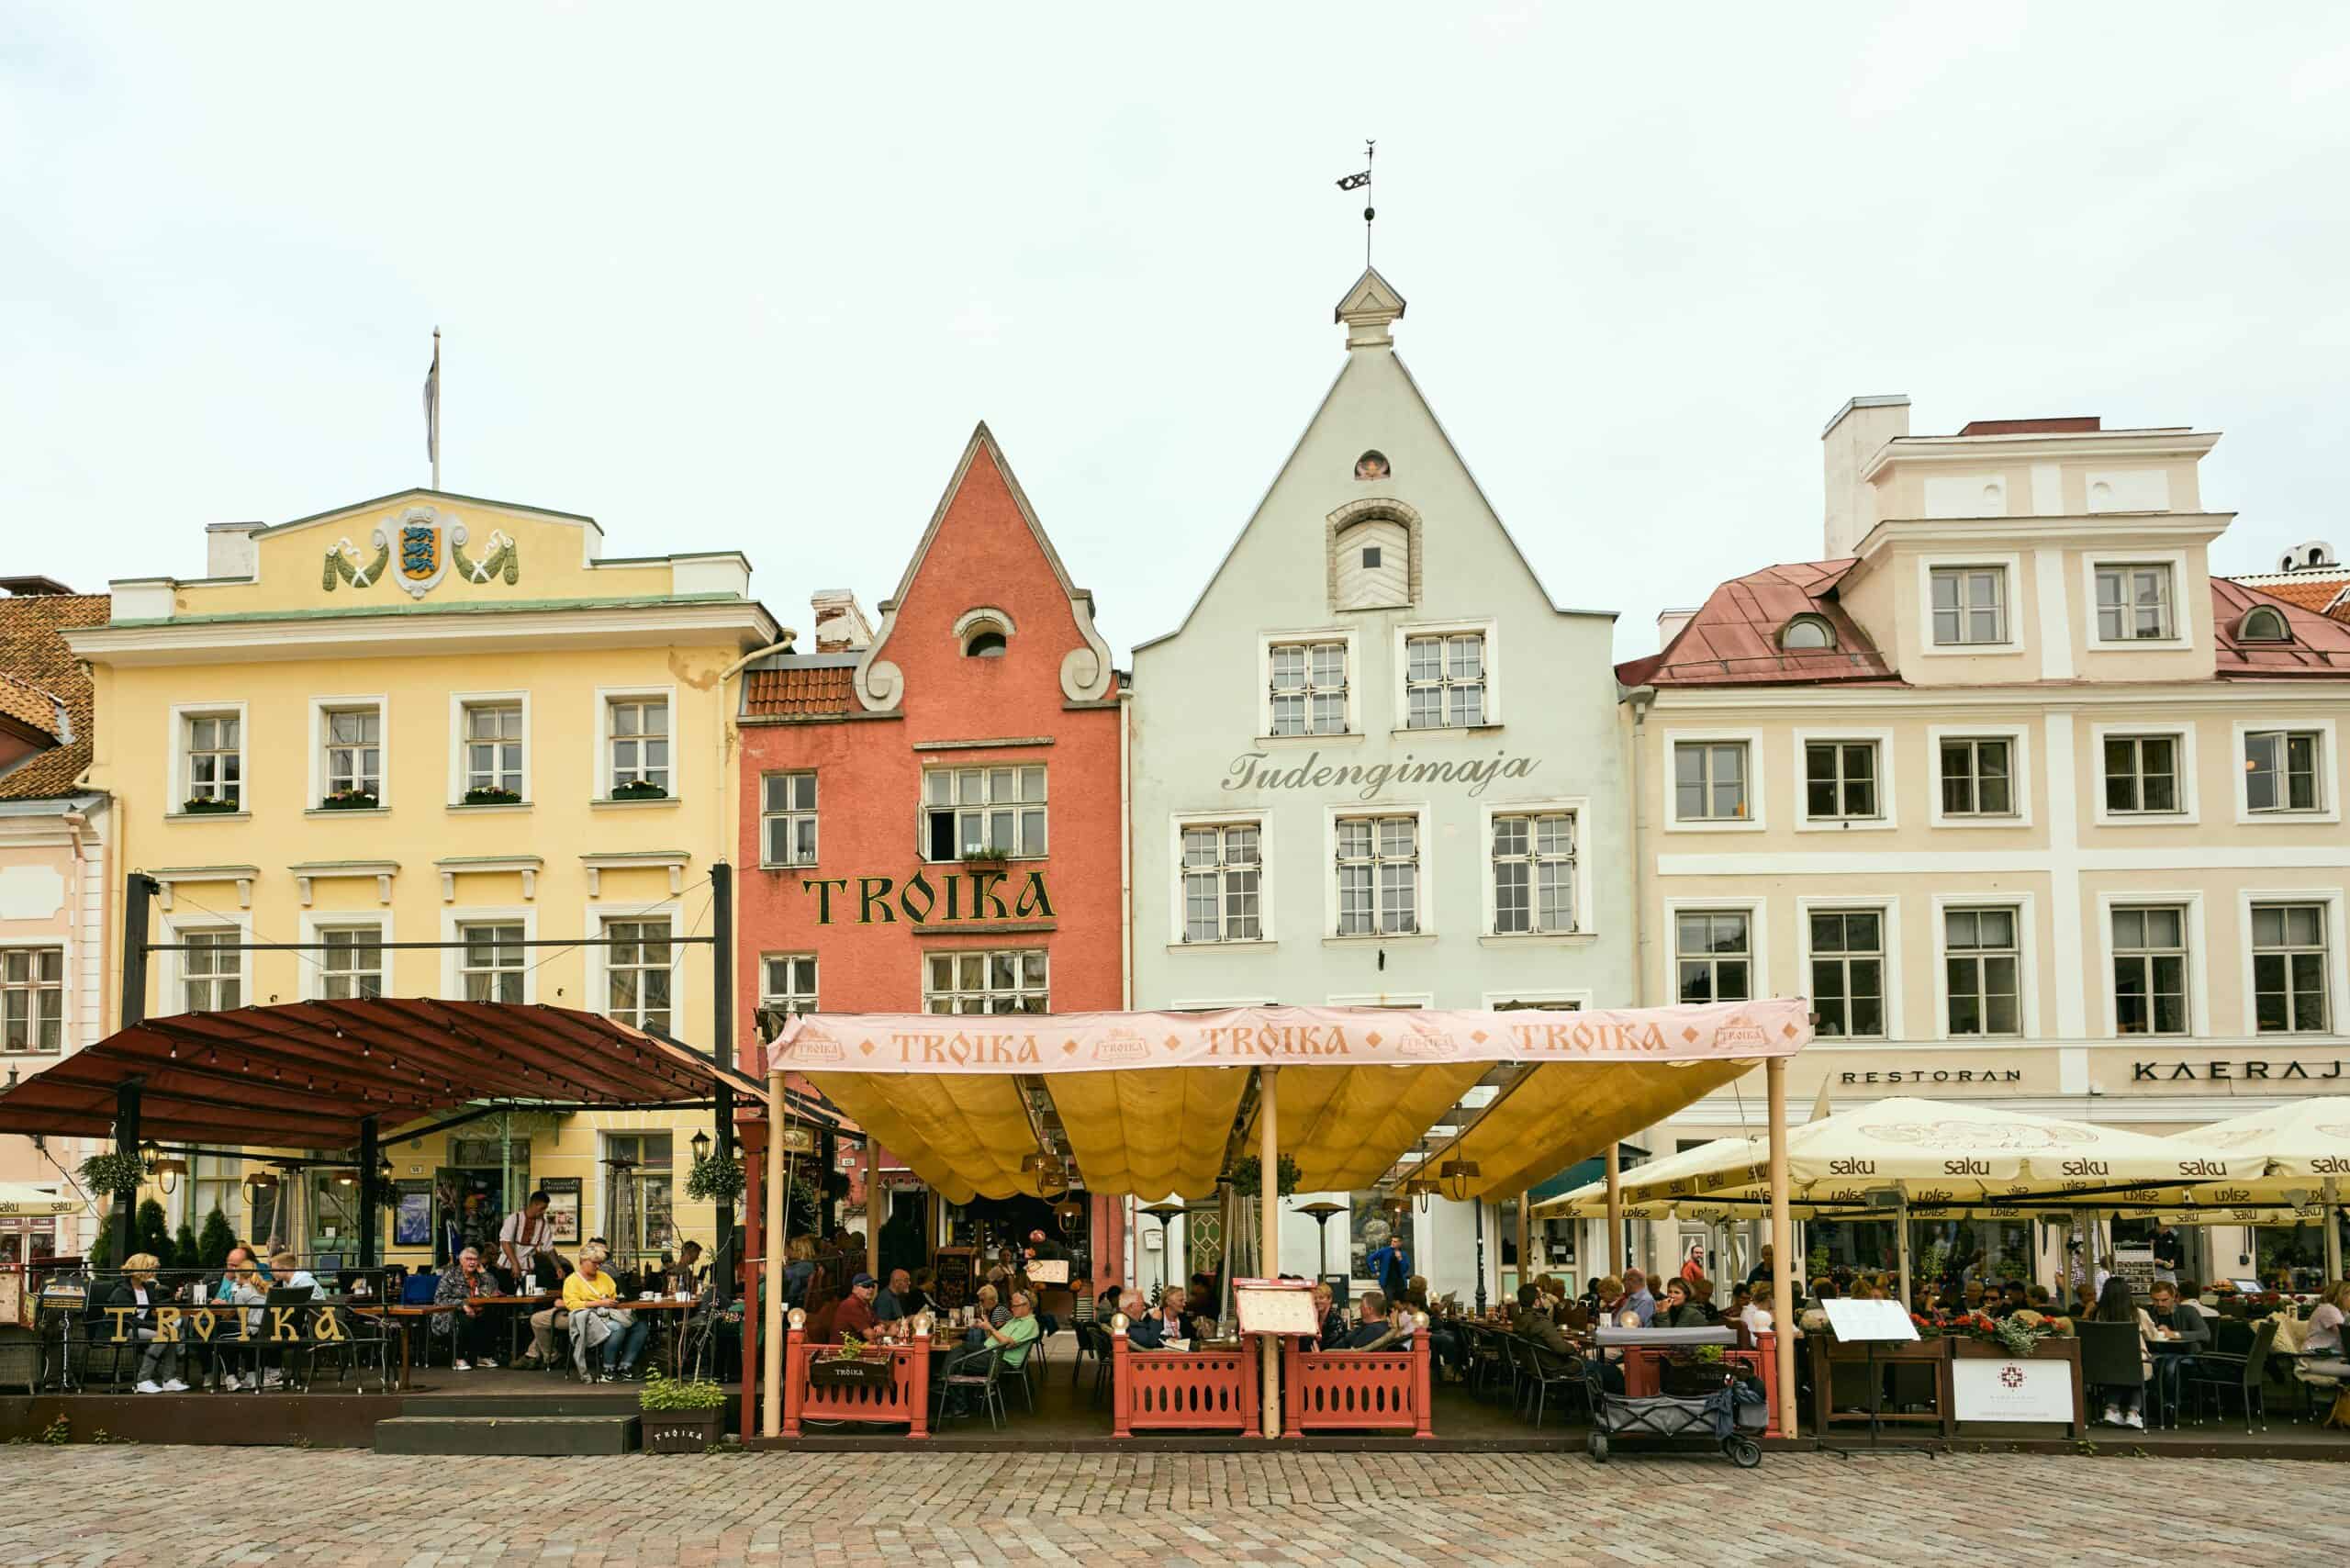 Tallinn, Estonia by Pedro Szekely